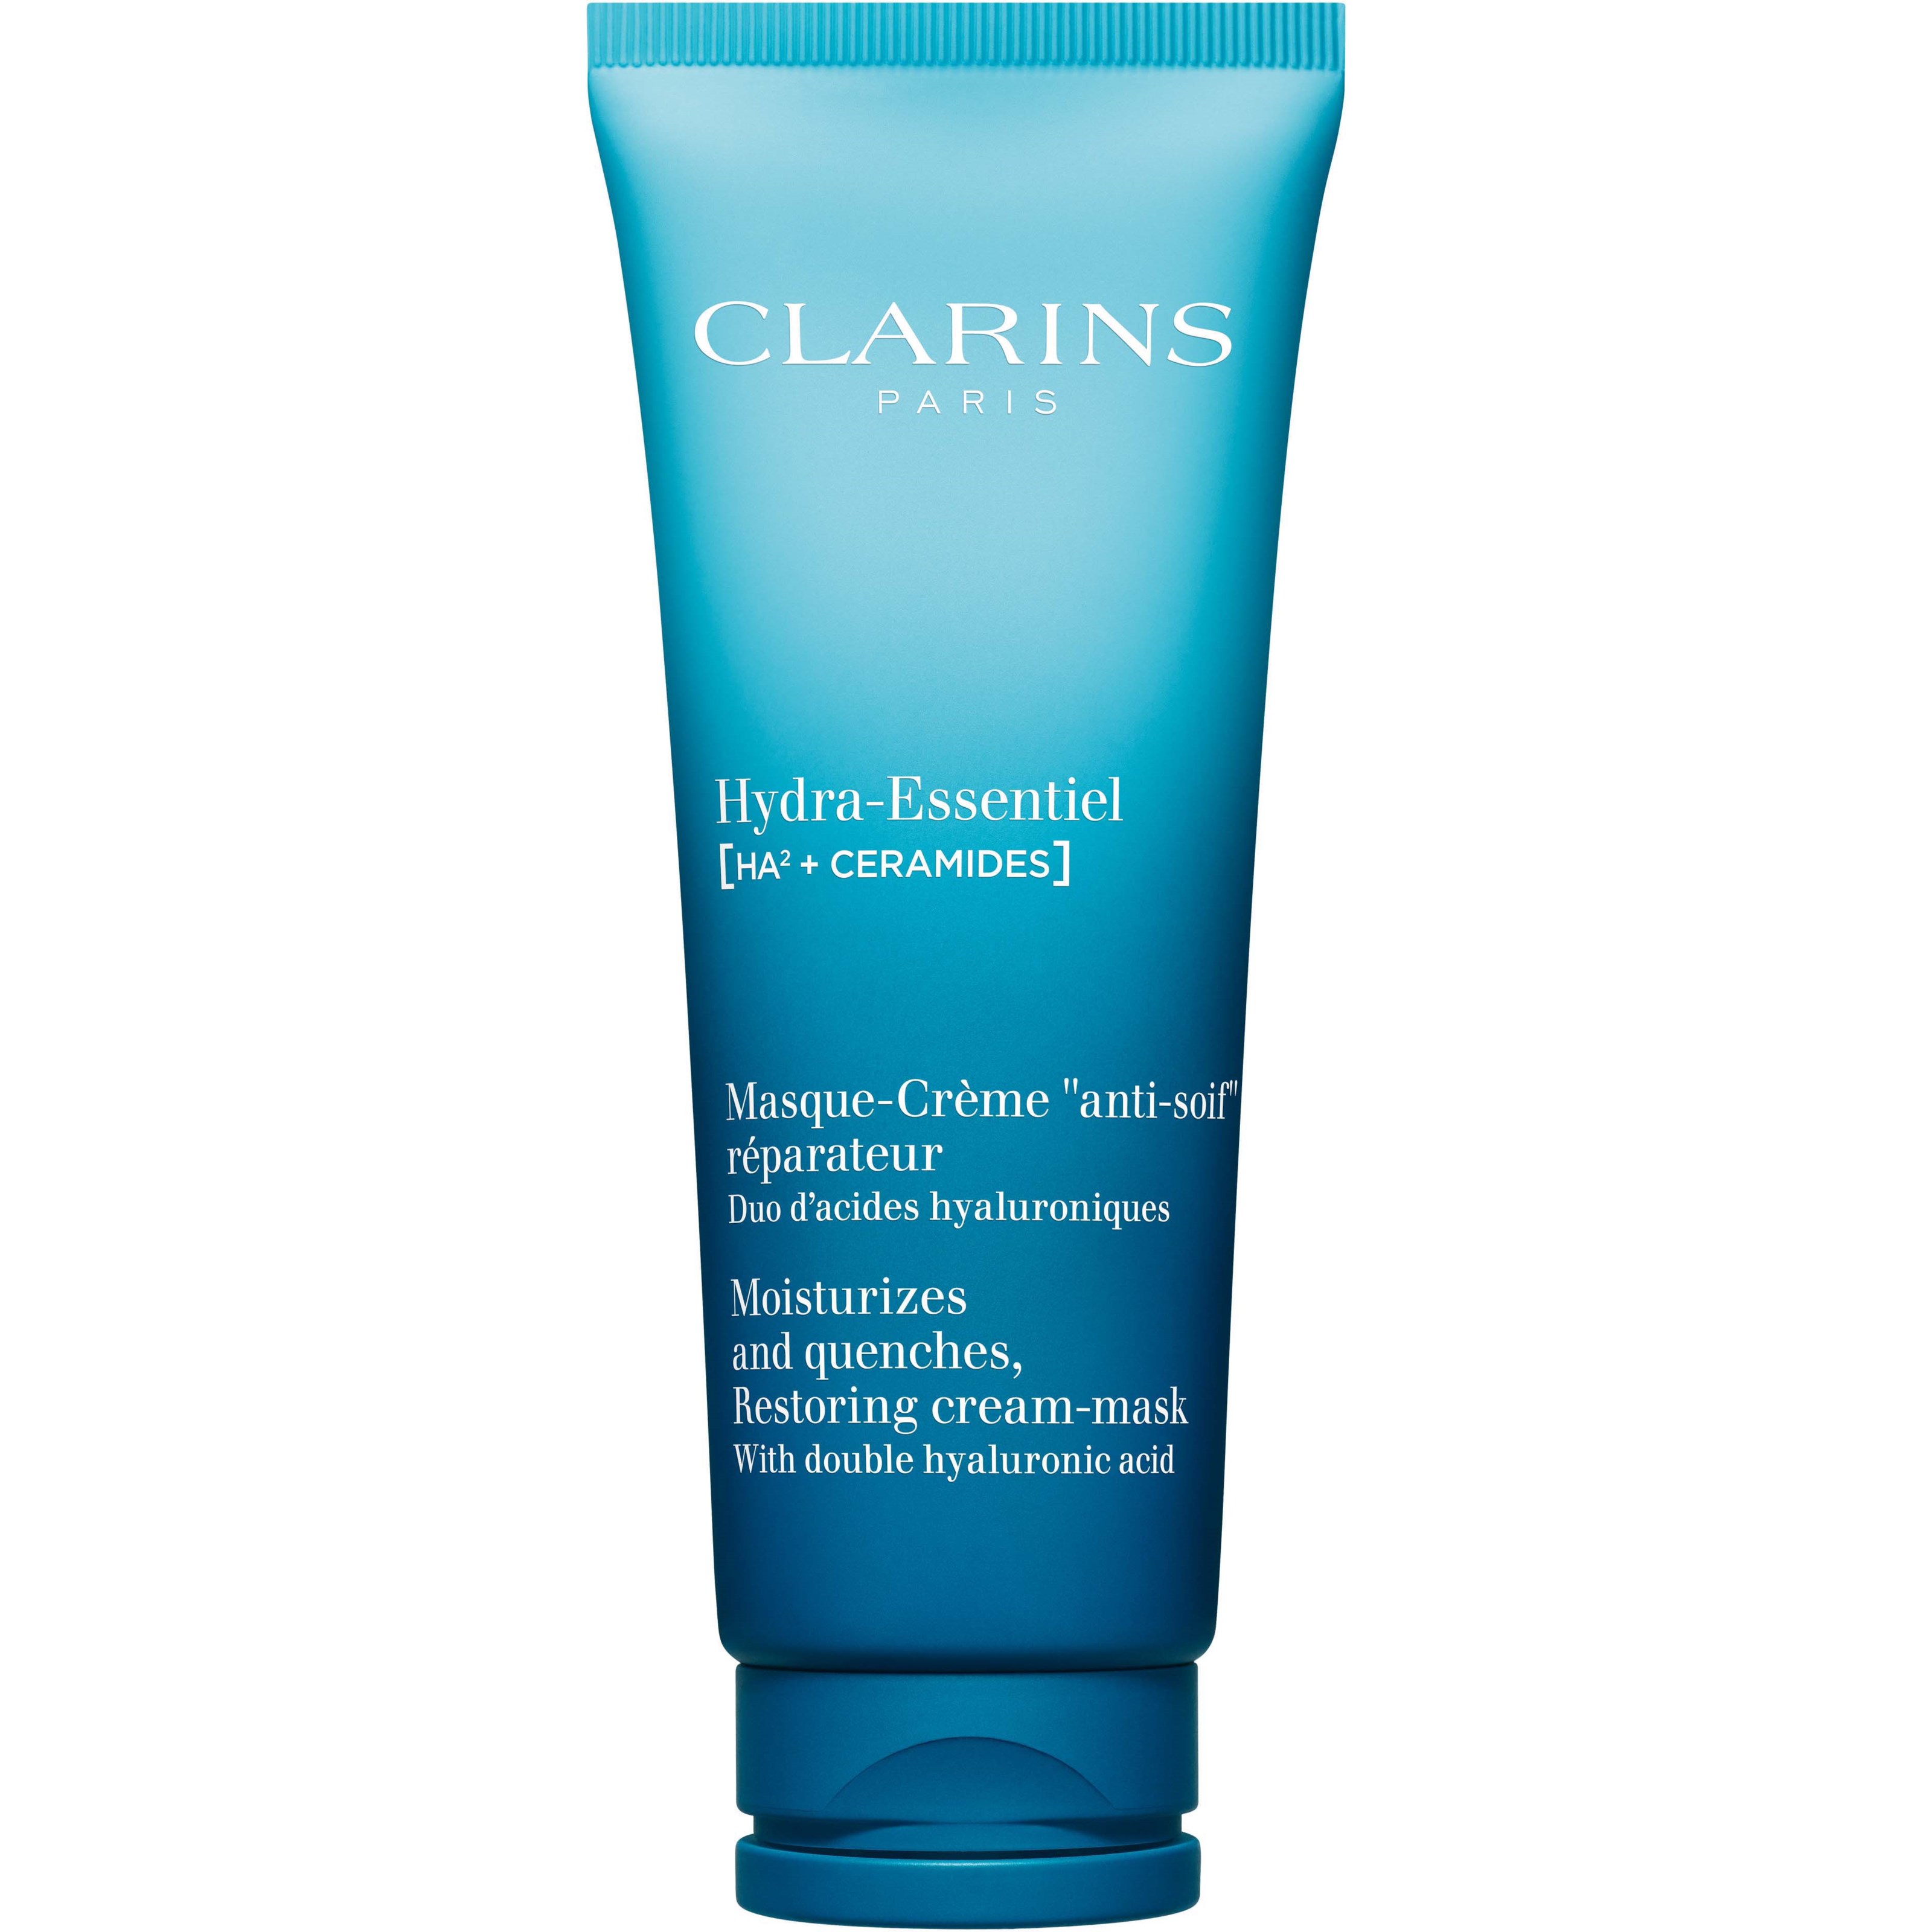 Clarins Hydra-Essentiel Moisturizes and Quenches, Restoring Cream-mask